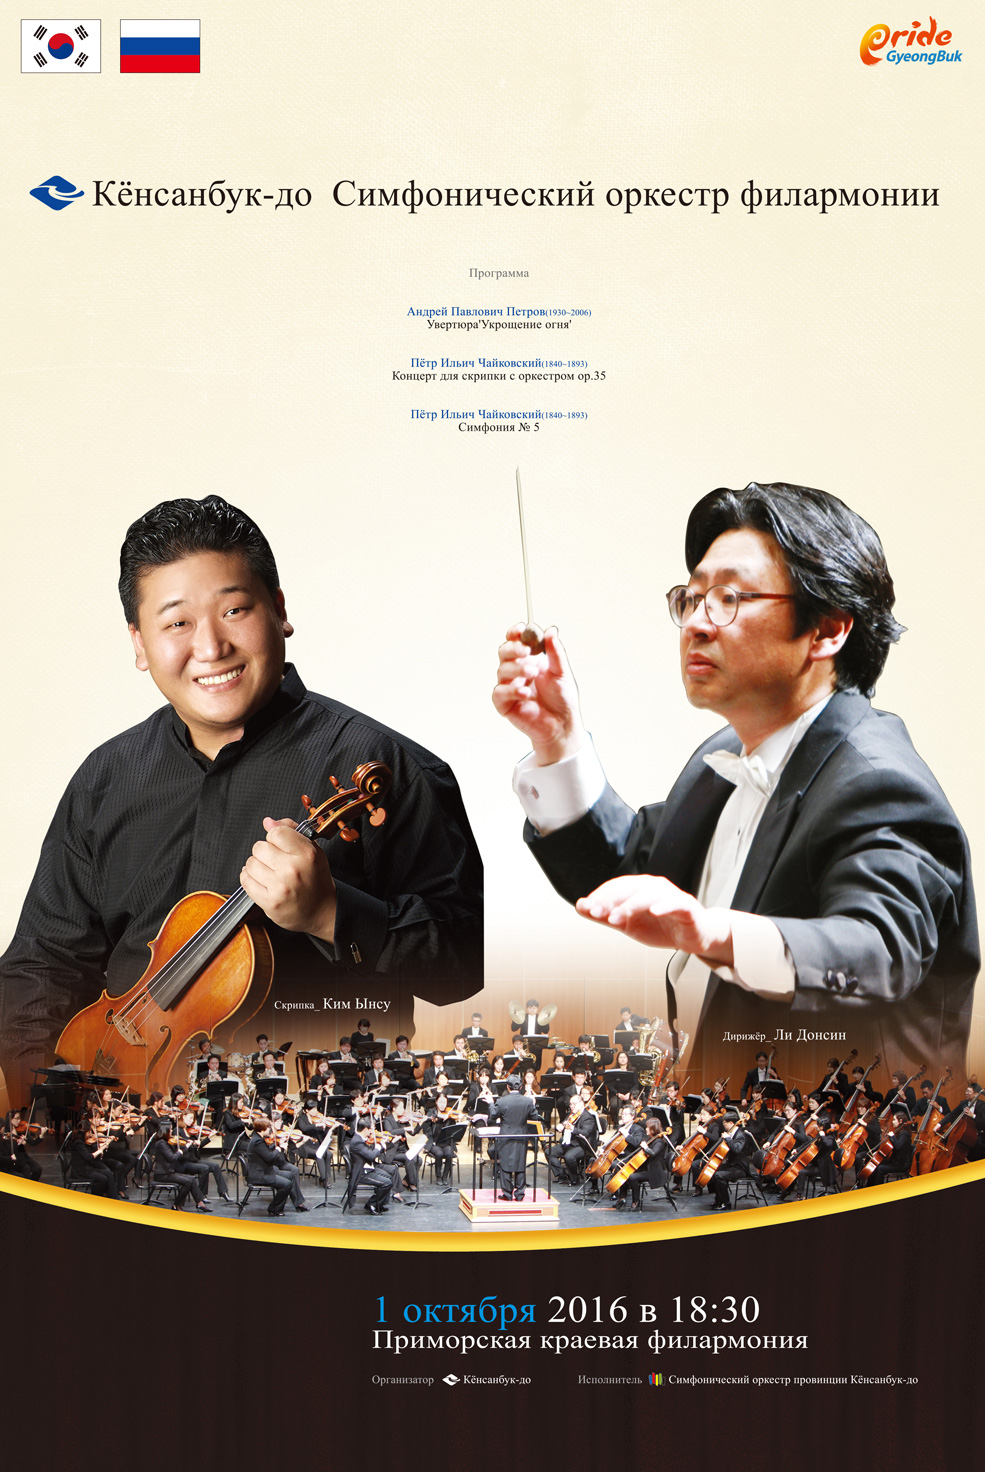 1 октября Большой зал в 18.30 Филармонический симфонический оркестр (Южная Корея)